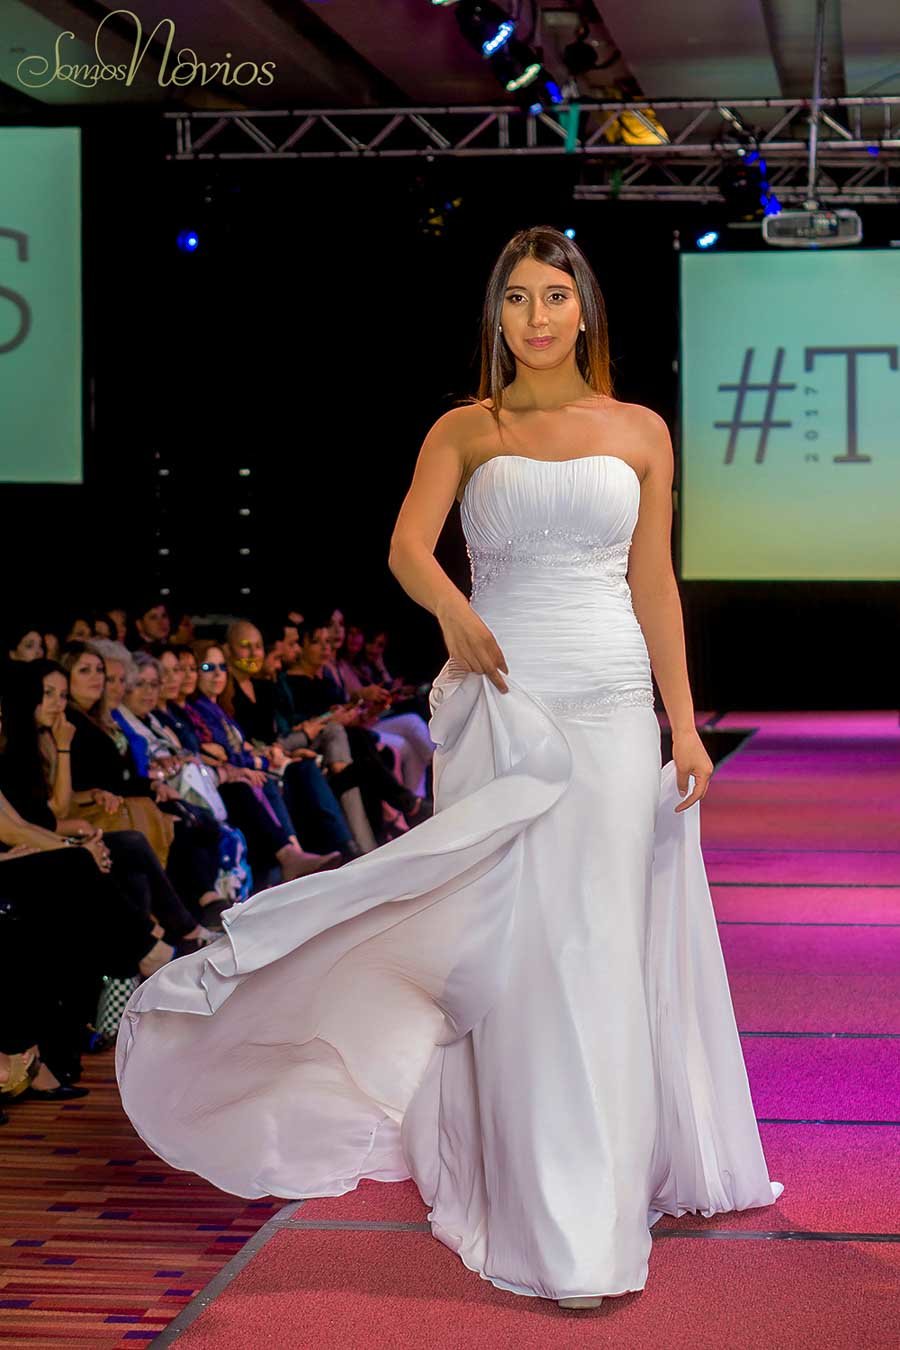 Modelo de Somos Novios con Vestido de novia blanco escote palabra de honor en el evento temuco fashion show 2017